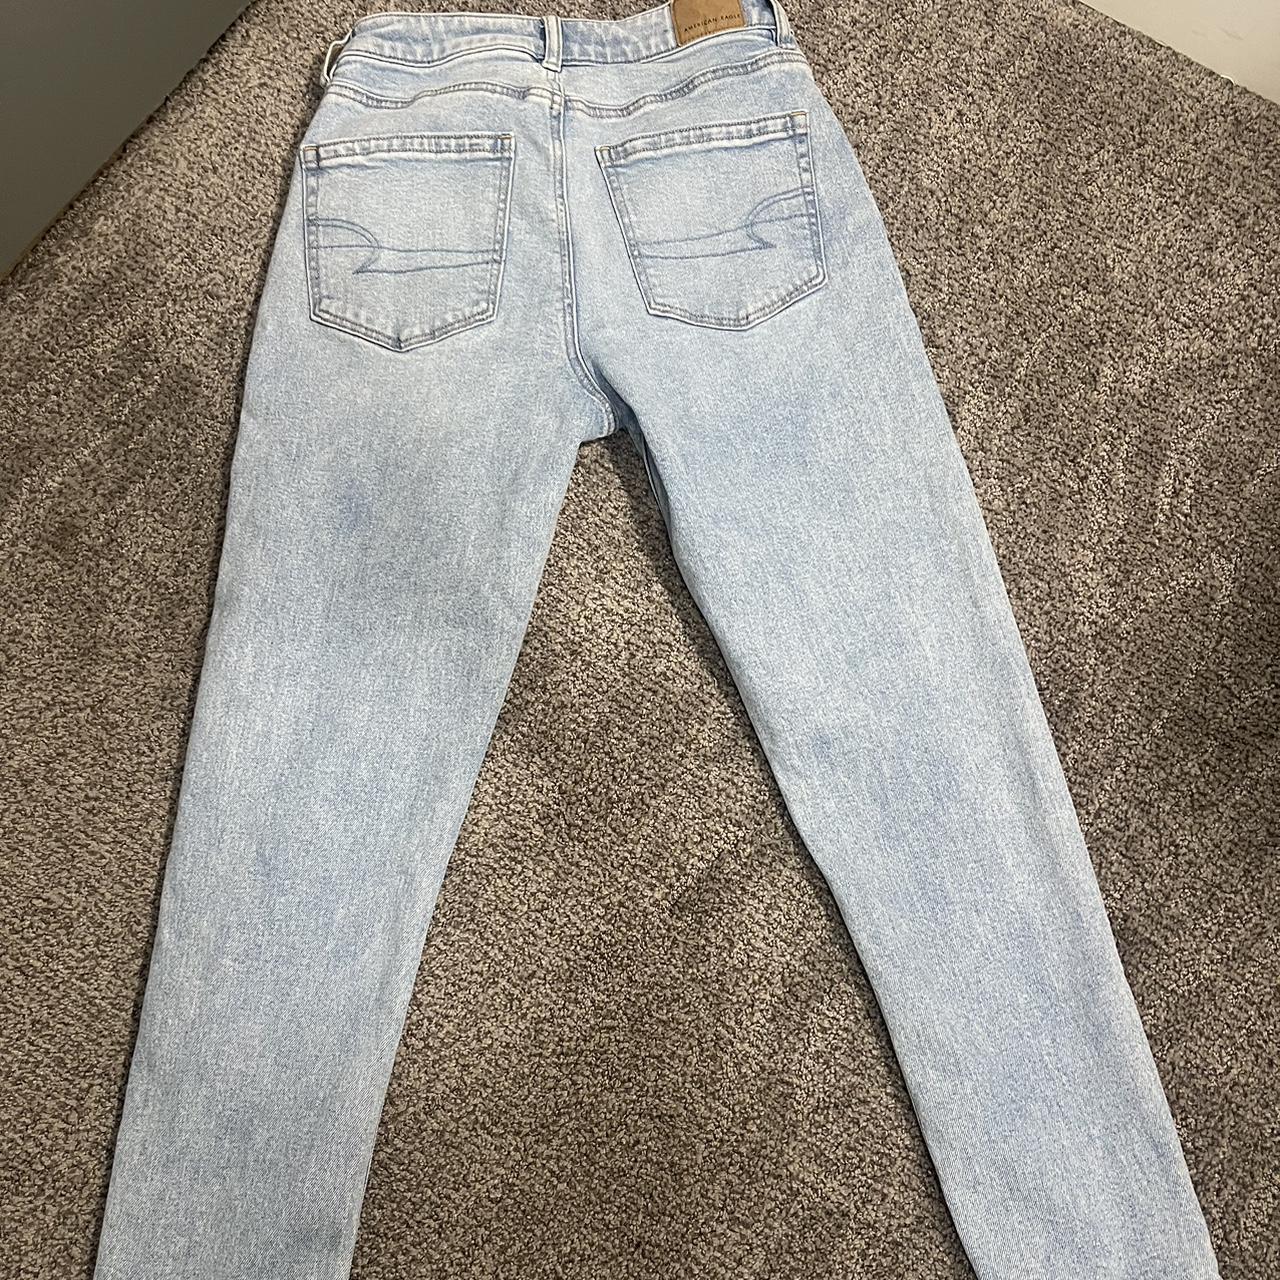 American Eagle light blue jeans 2 short - Depop